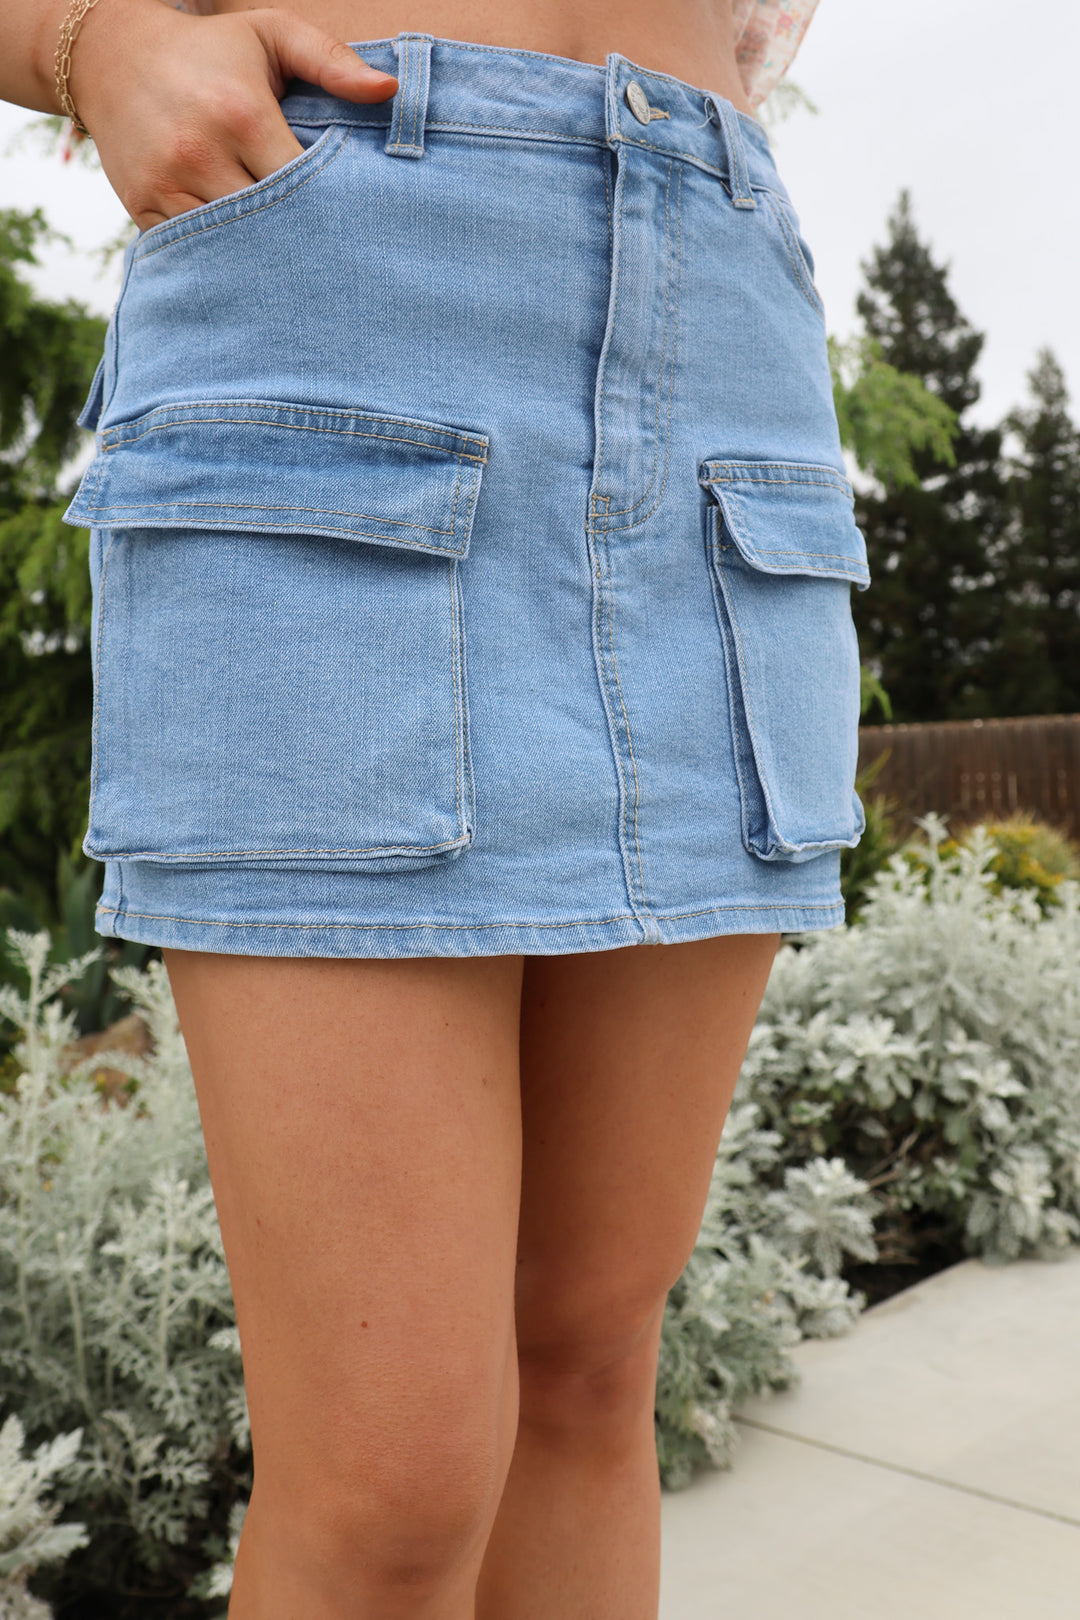 Up to Date Mini Skirt In Light Denim - ShopSpoiled